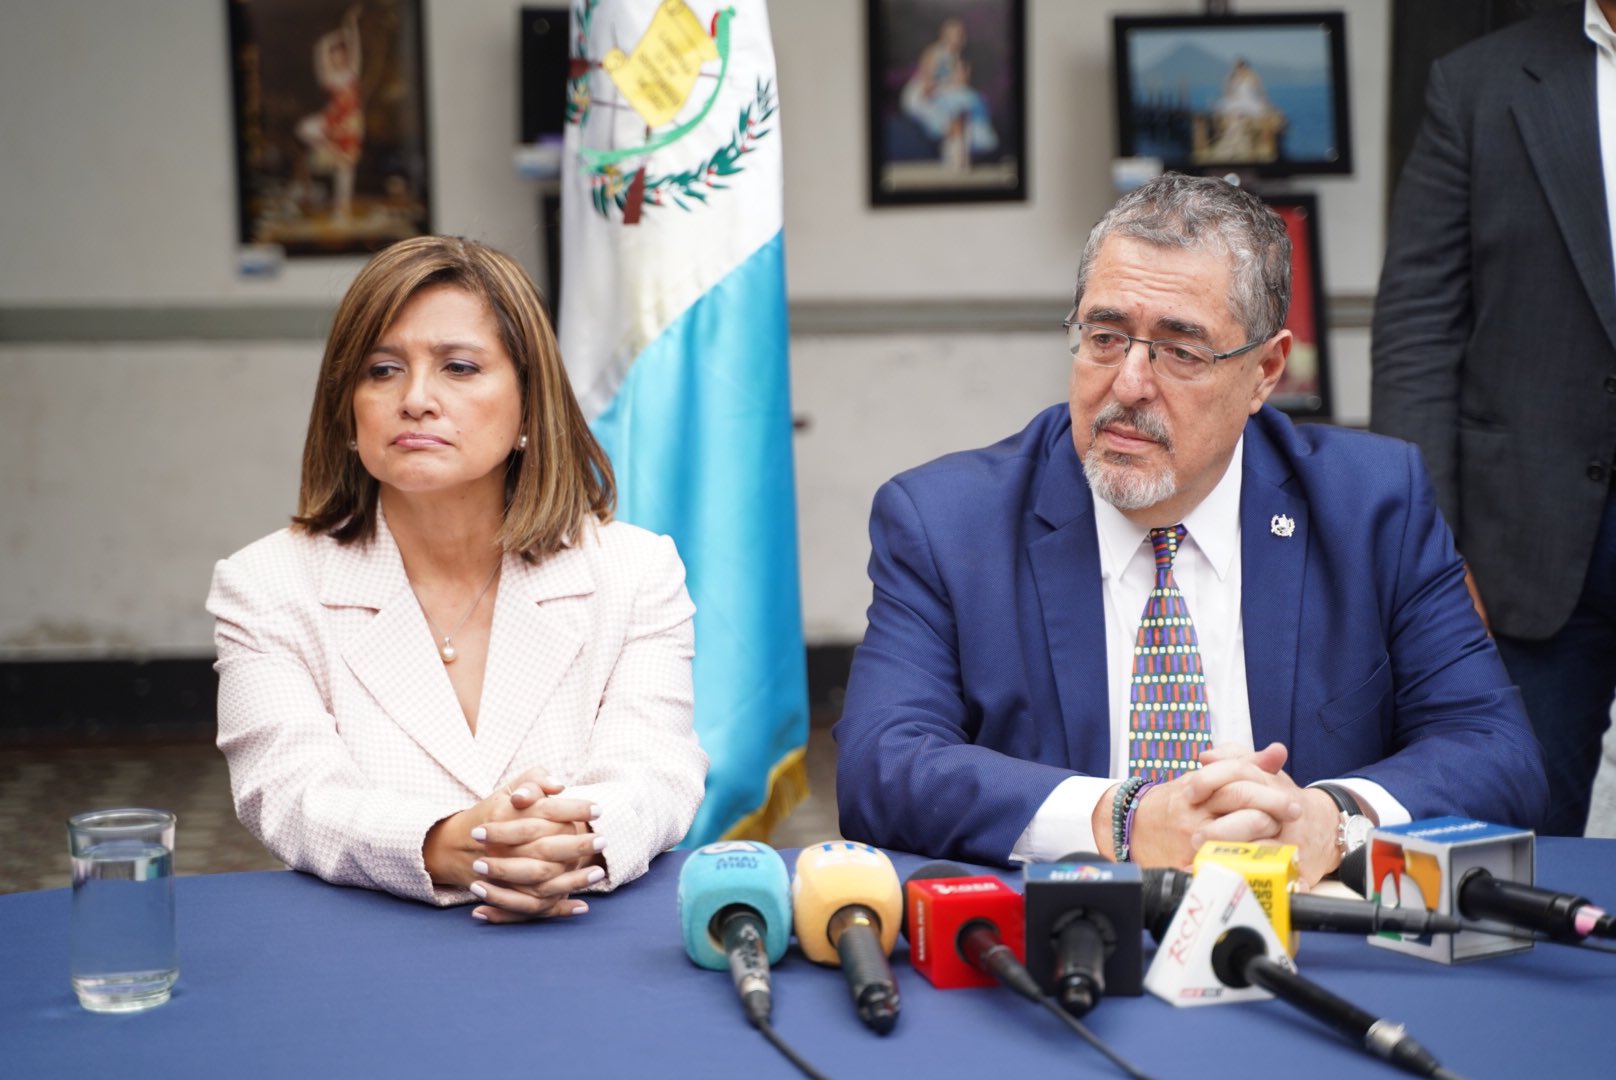 Bernardo Arévalo calls for dialogue on crisis in Guatemala